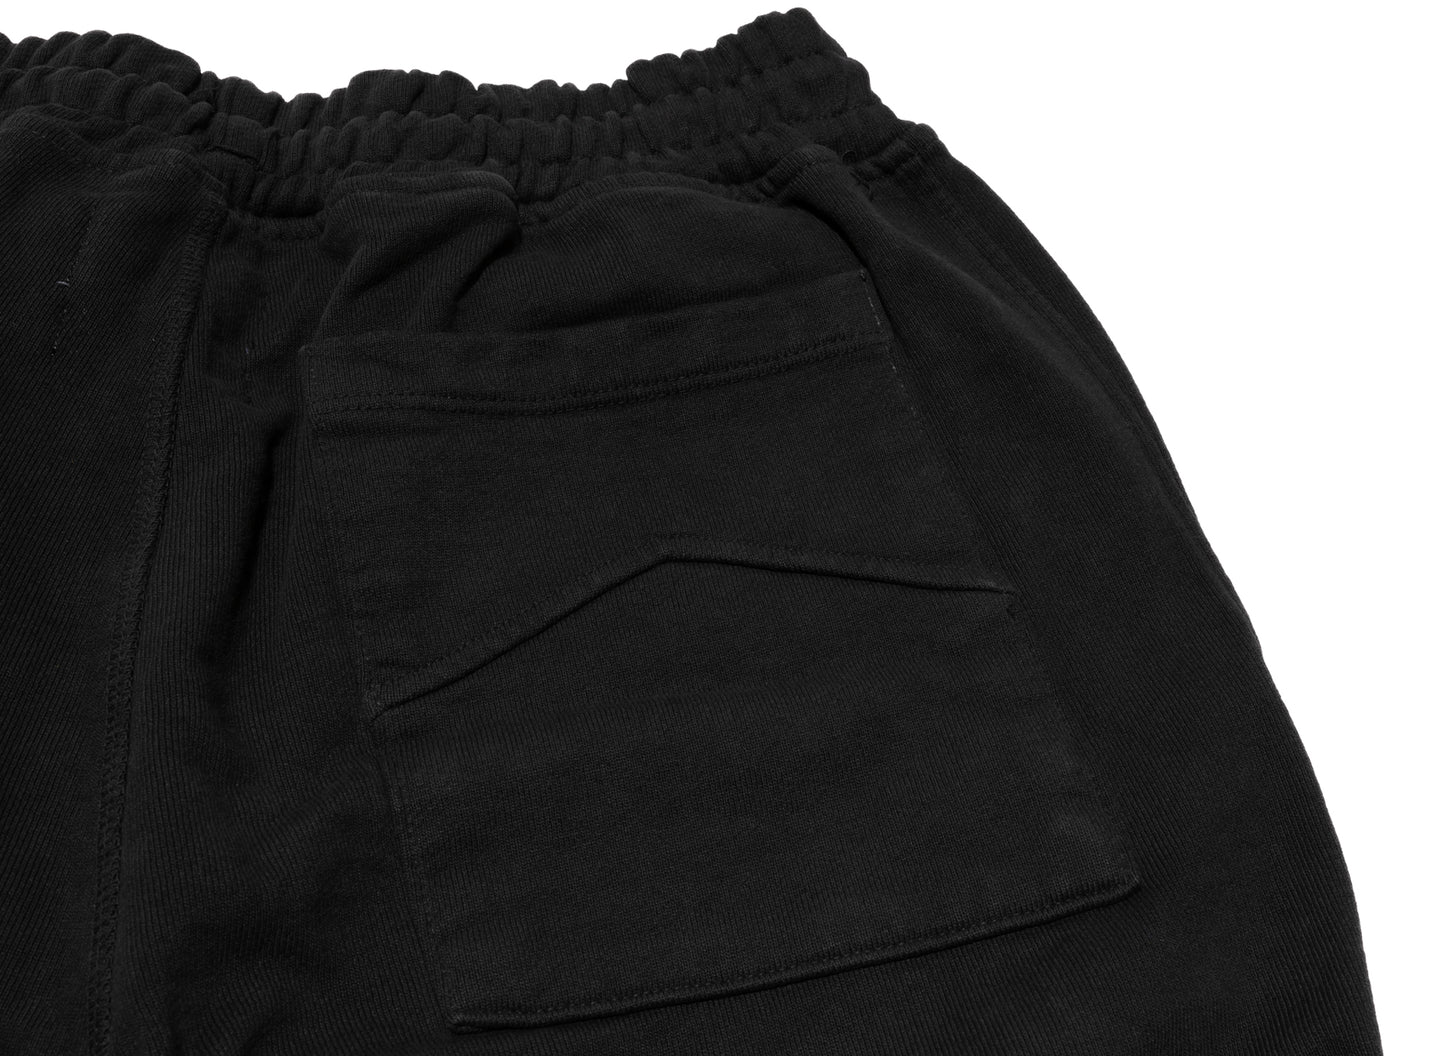 Rhude Terry Sweatpants in Vintage Black